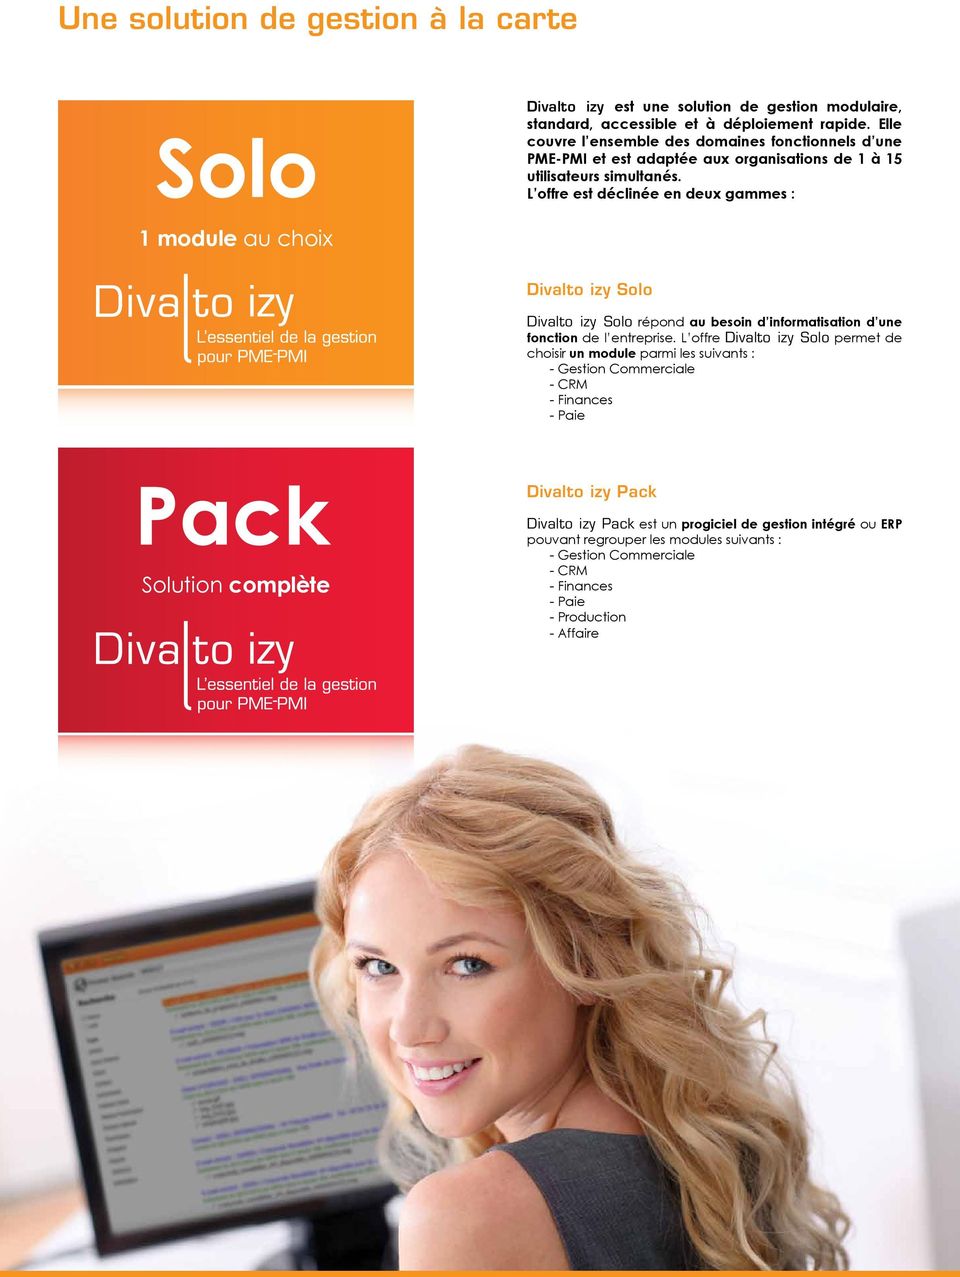 L offre est déclinée en deux gammes : Divalto izy Solo Divalto izy Solo répond au besoin d informatisation d une fonction de l entreprise.